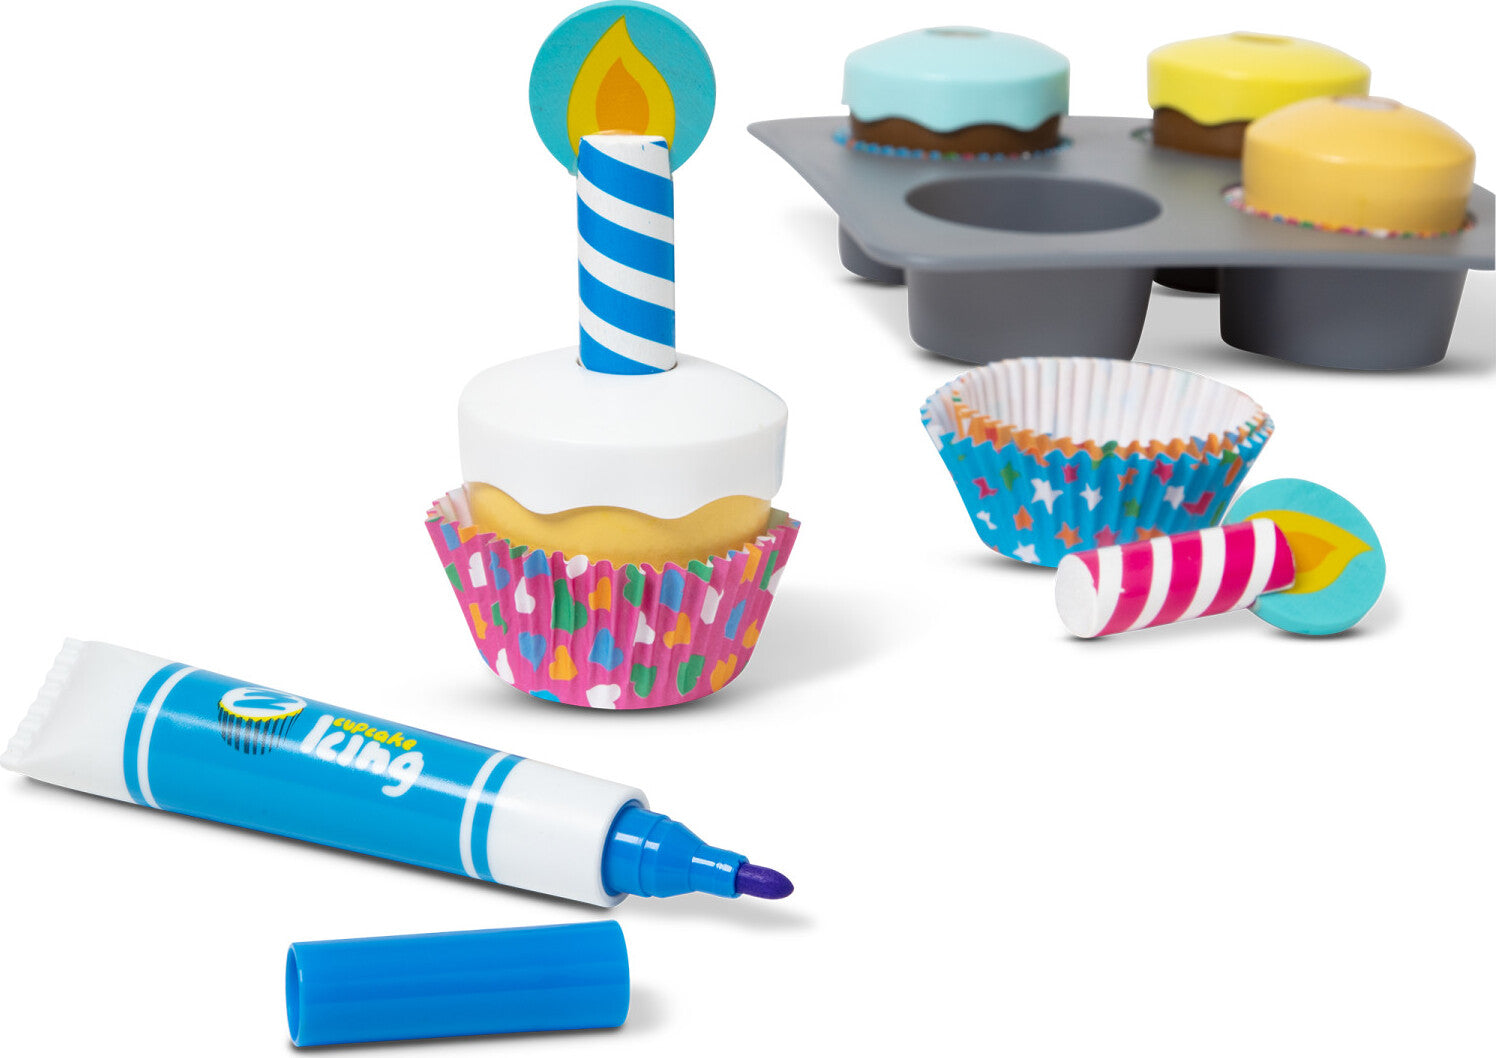 Bake &amp; Decorate Cupcake Set